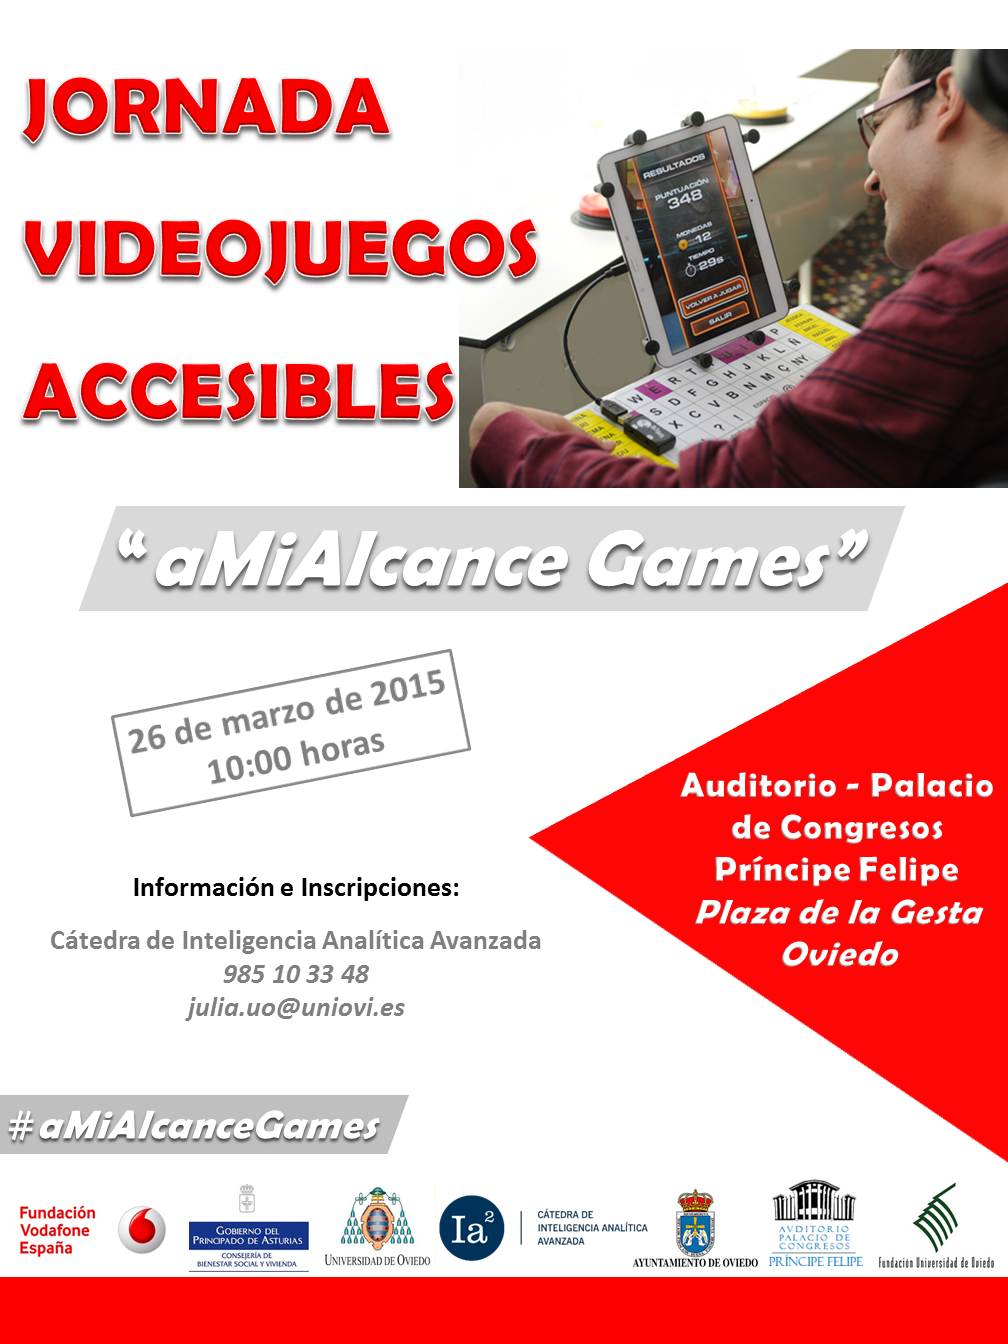 Jornada de videojuegos accesibles en Oviedo